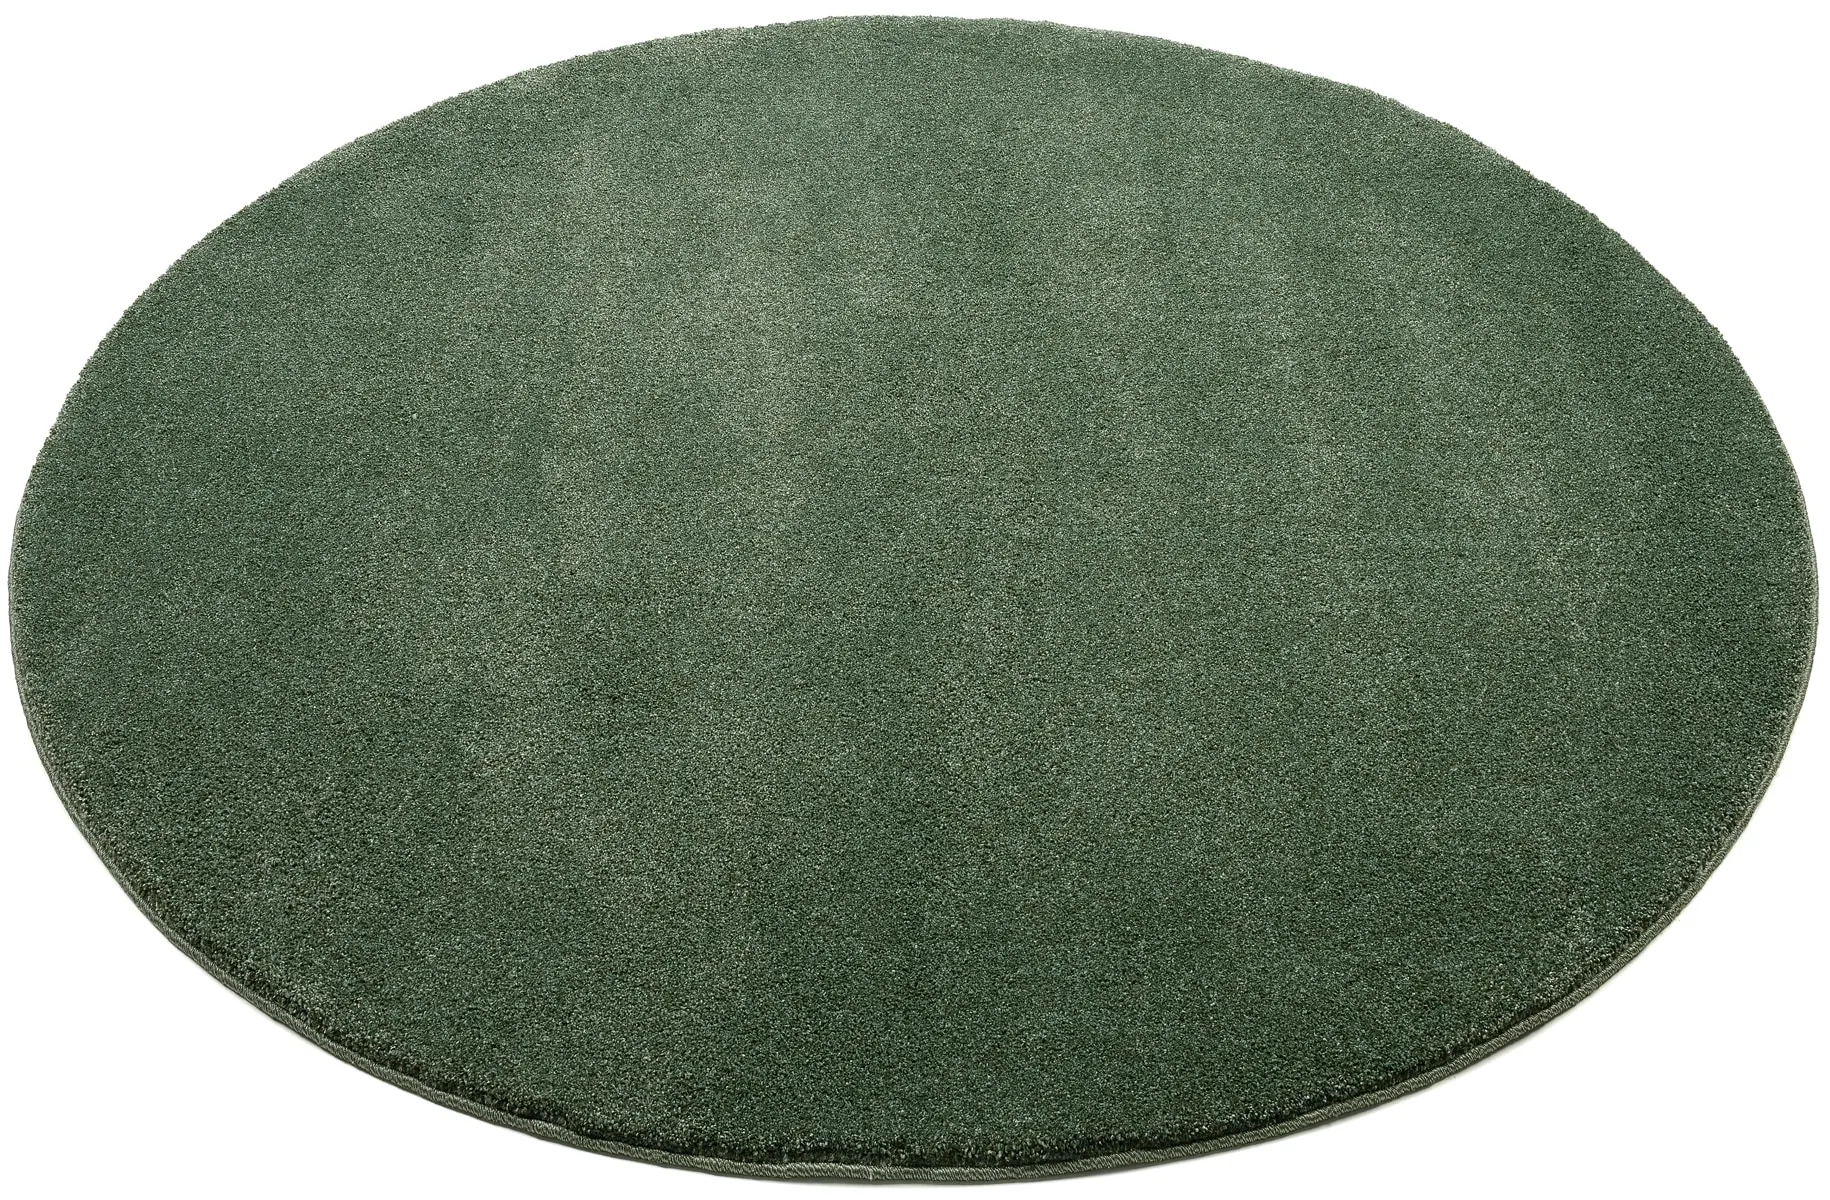 Teppich OCI DIE TEPPICHMARKE "NEW VILLA MELANGE" Teppiche Gr. Ø 160 cm, 20 mm, 1 St., grün Esszimmerteppiche maschinell gewebt, strapazierfähig, alle Wohnräume